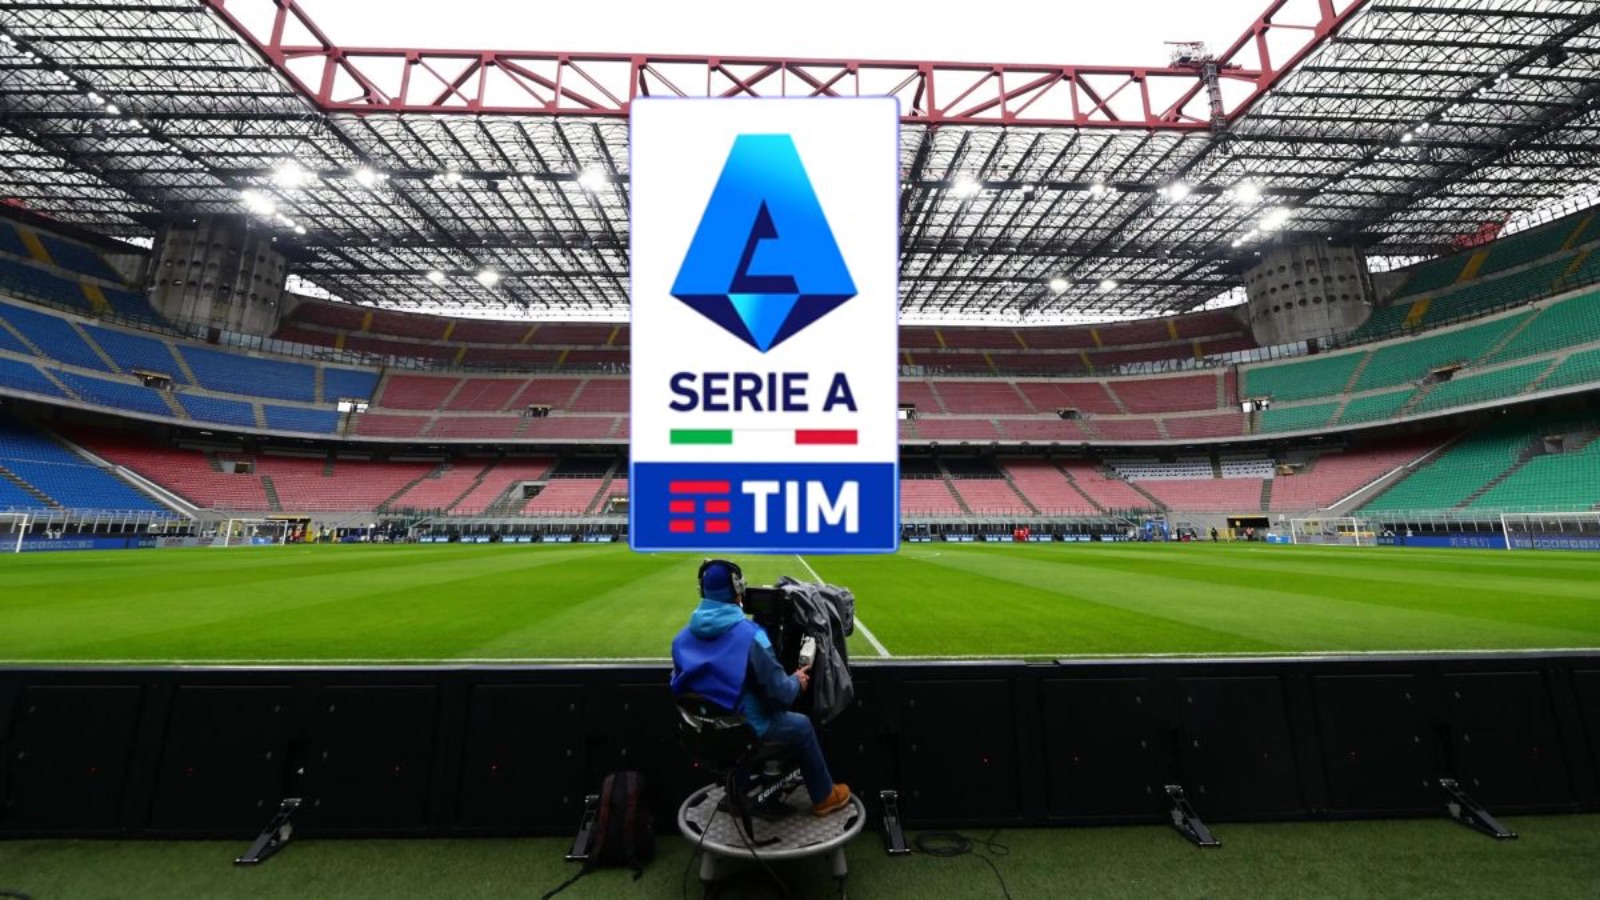 Le IPTV potrebbero vincere ancora, è tensione tra Serie A e operatori